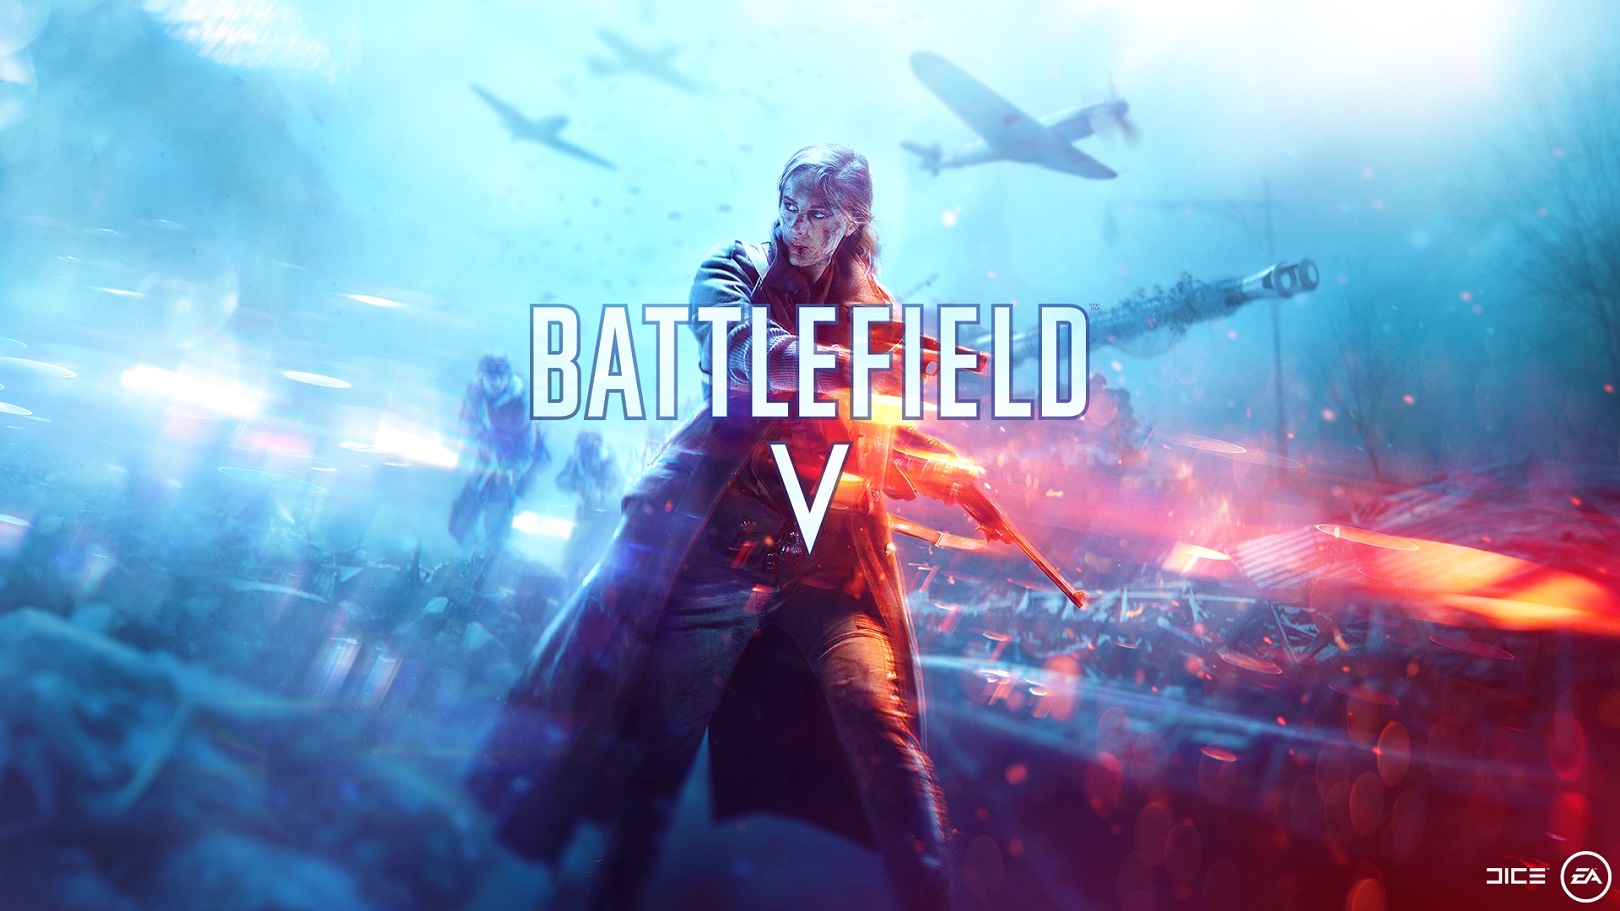 E3 2018 etkinliklerinin ilk konuğu Battlefield 5 oldu